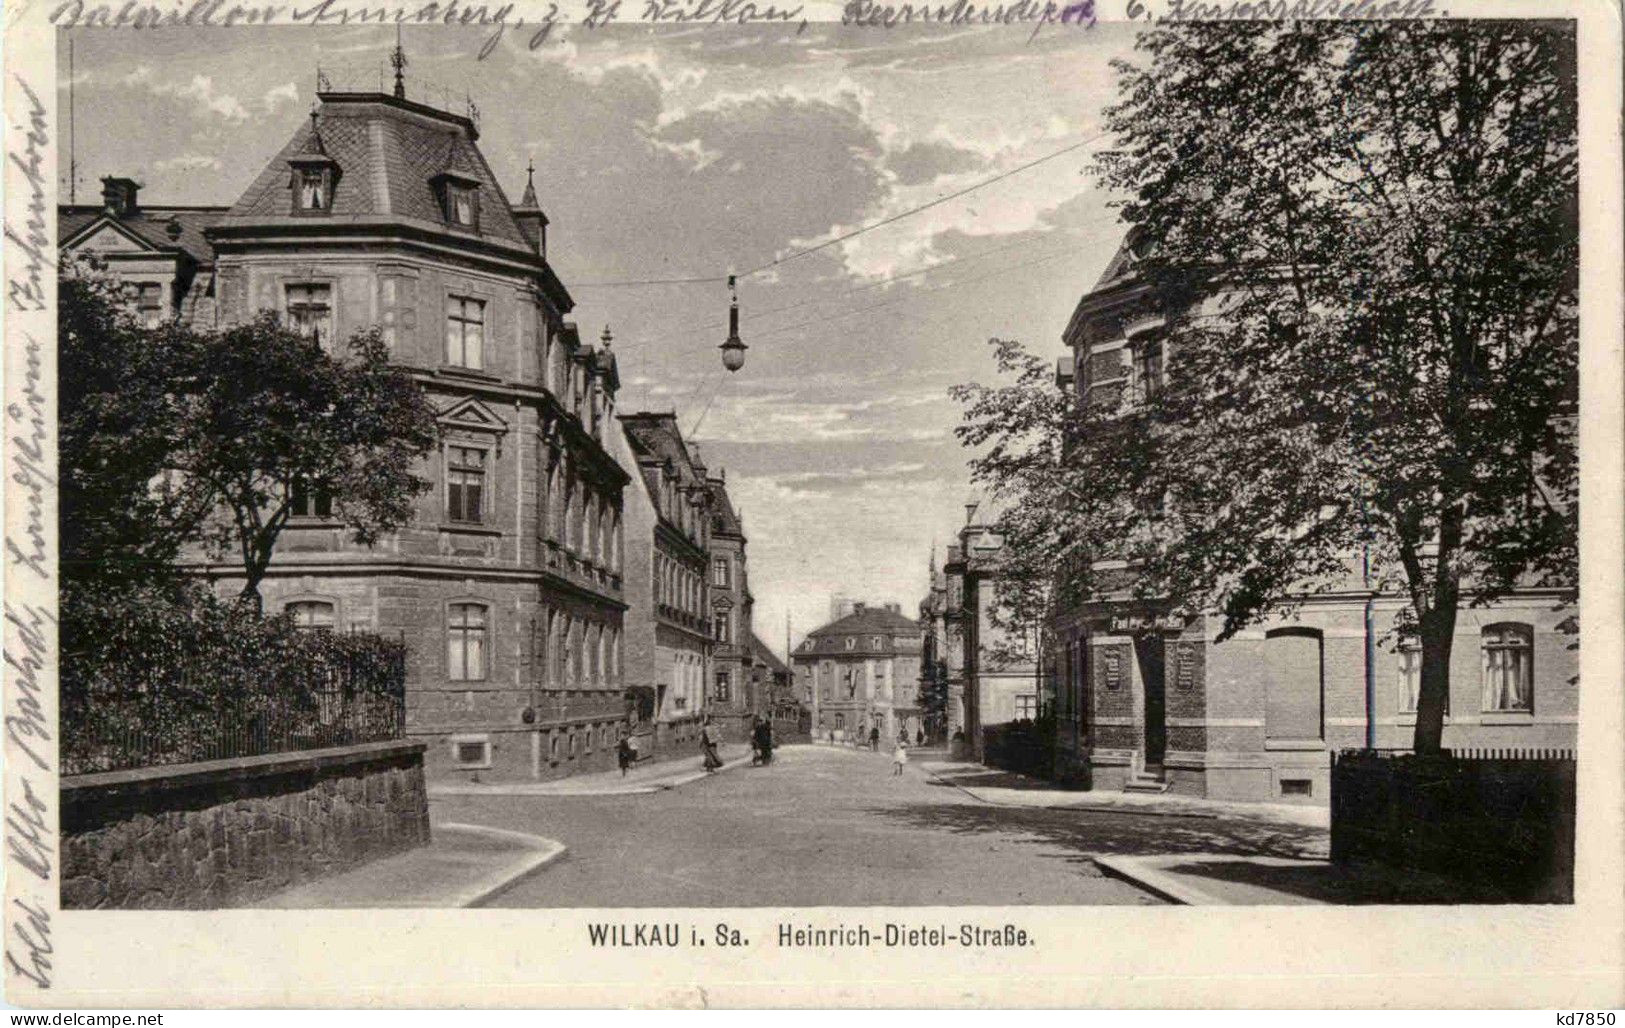 Wilkau - Heinrich Dietel Strasse - Feldpost - Zwickau